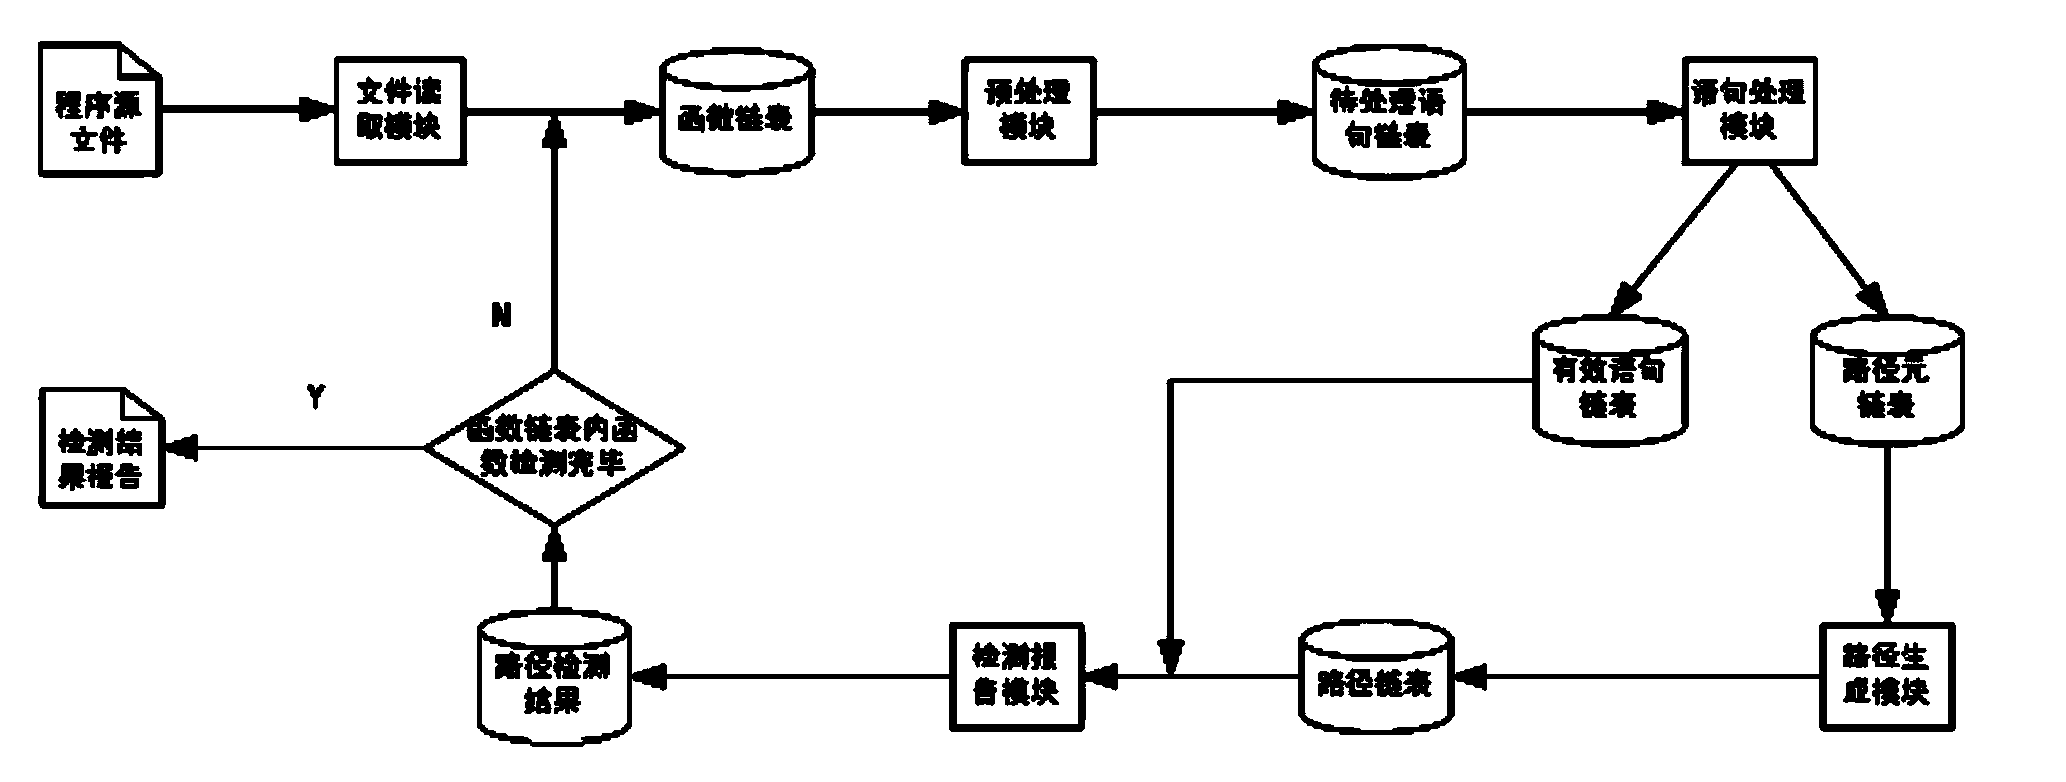 Resource problem detection method for novel operation system